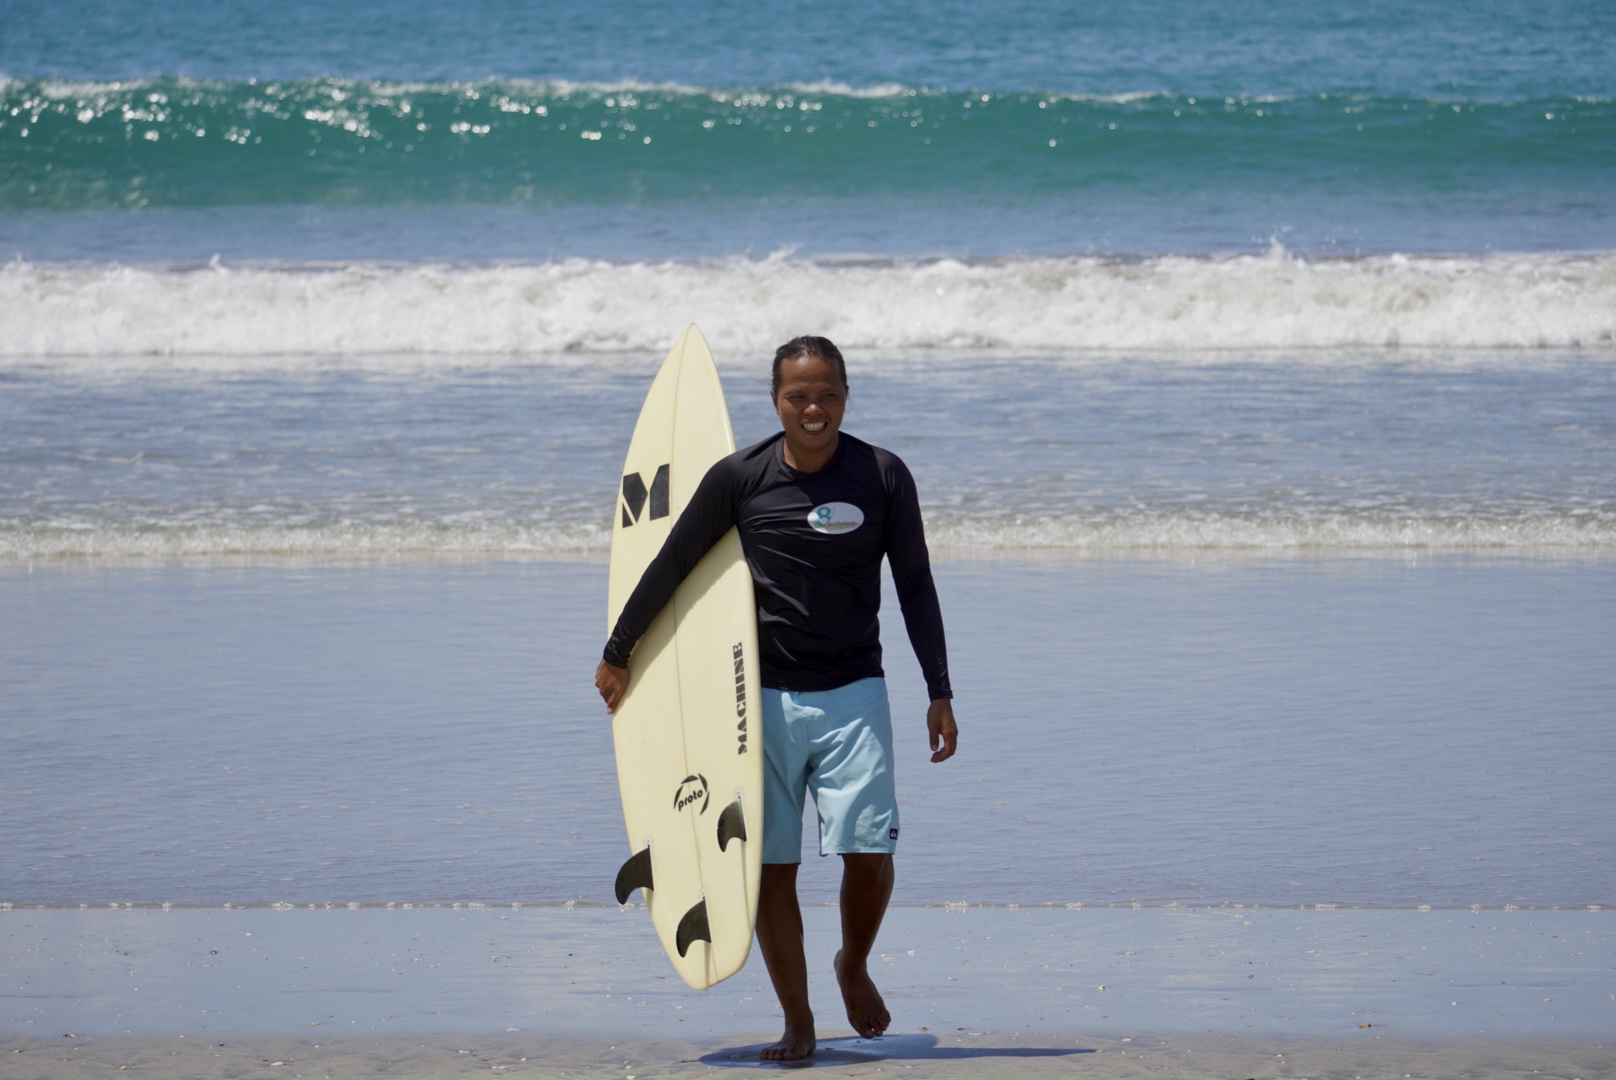 Donlee surf teacher surf lesson bali 8Surfschool